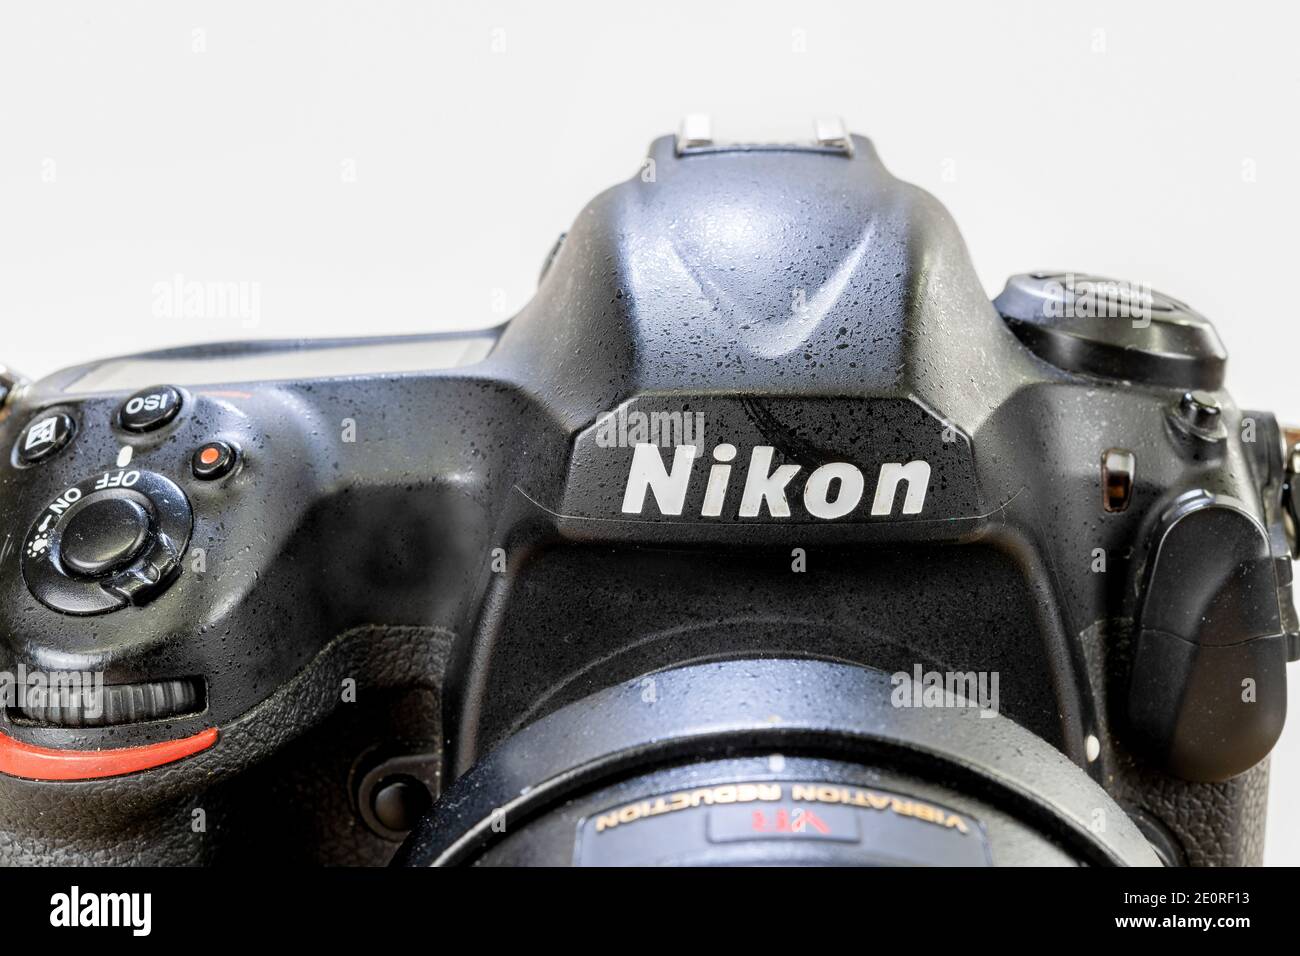 In questa illustrazione, una vista frontale di una fotocamera con marchio Nikon Foto Stock